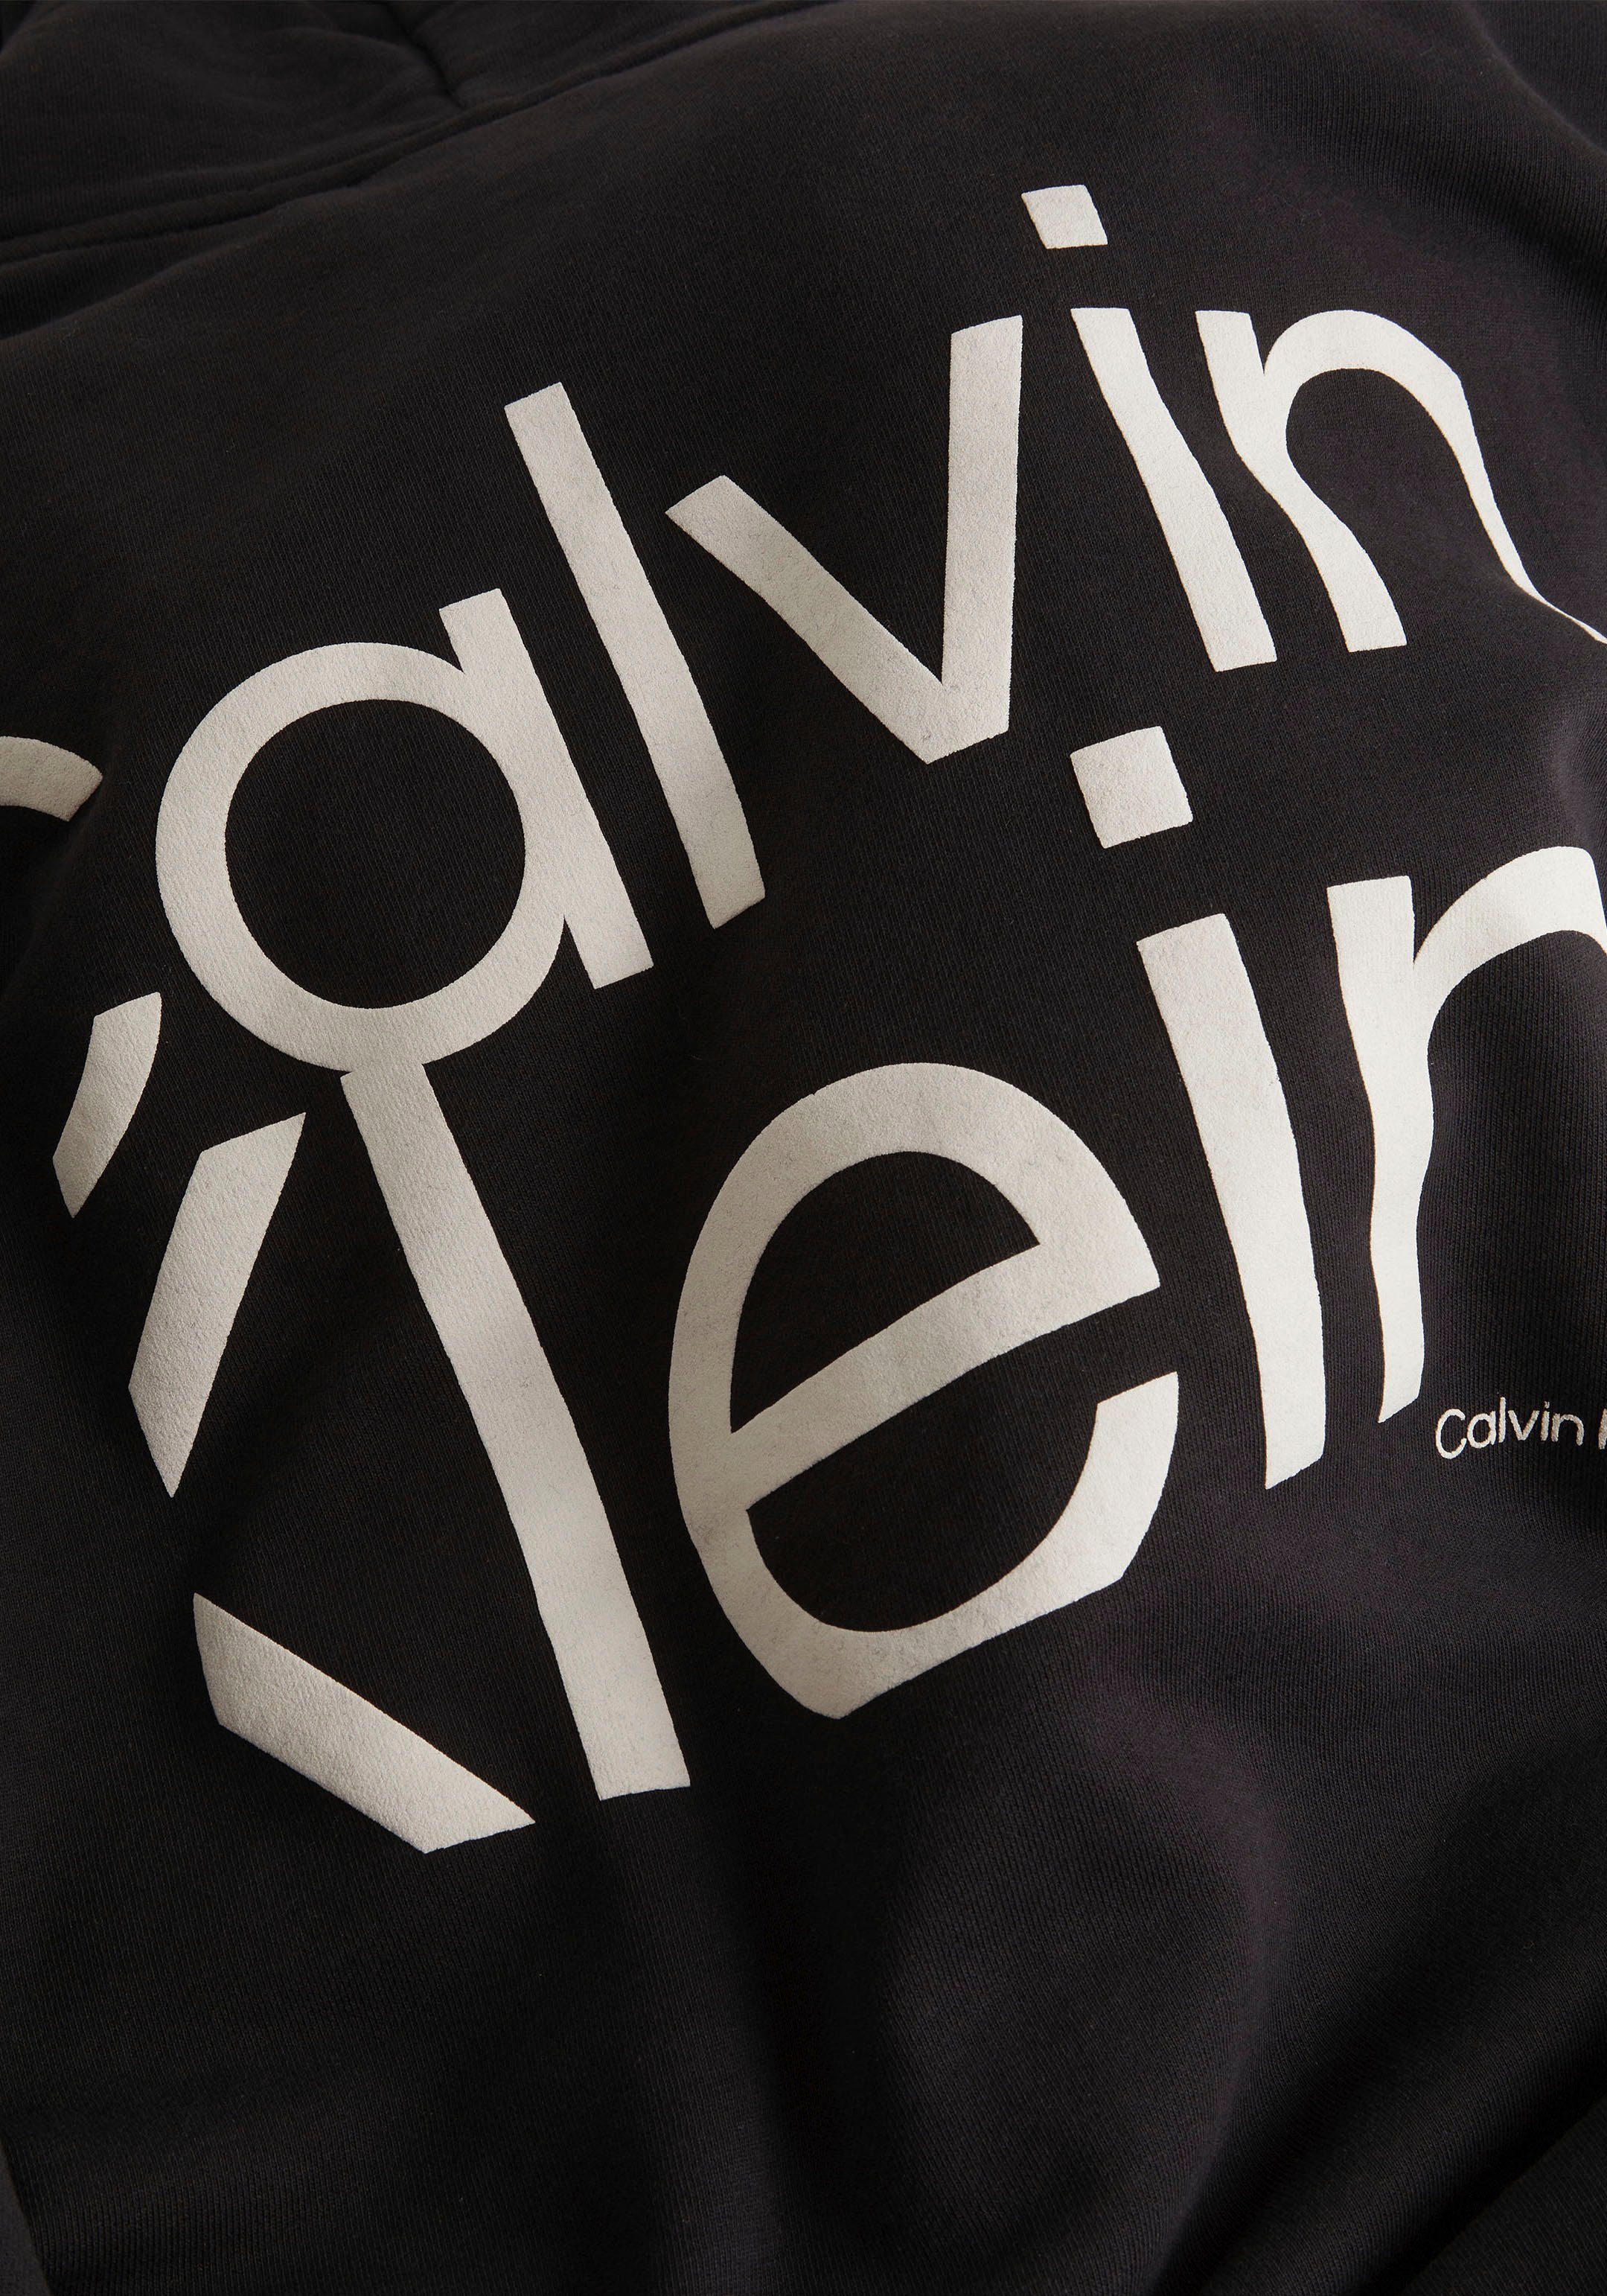 Calvin großem schwarz CK-Schriftzug auf Rücken mit dem Kapuzensweatshirt Klein